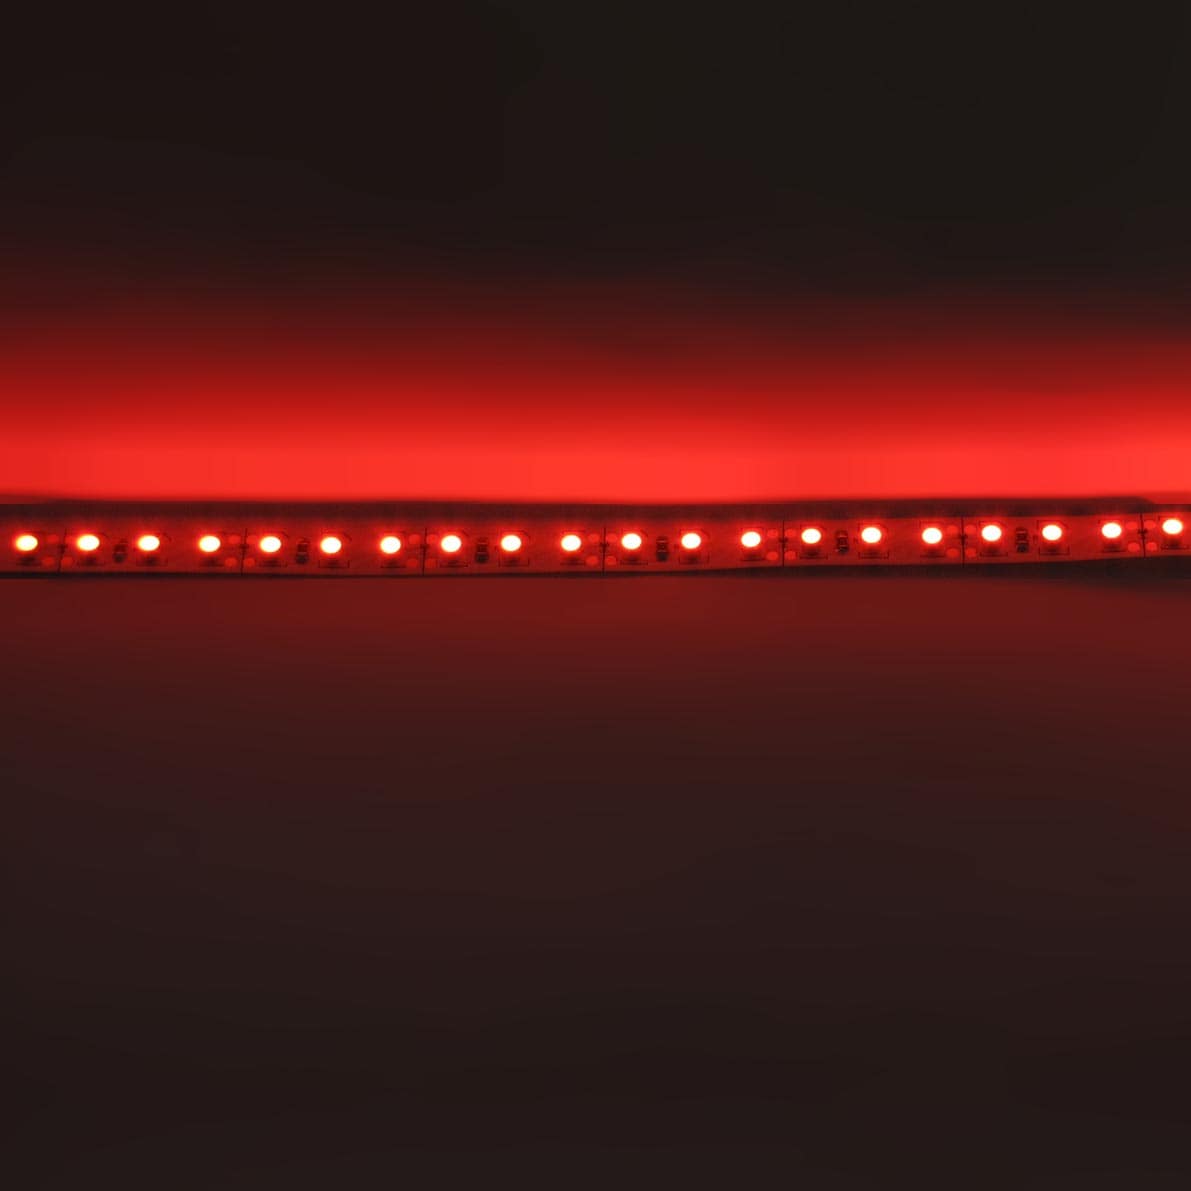 Светодиодная лента Standart class, 3528, 120led/m, Red, 12V, IP20